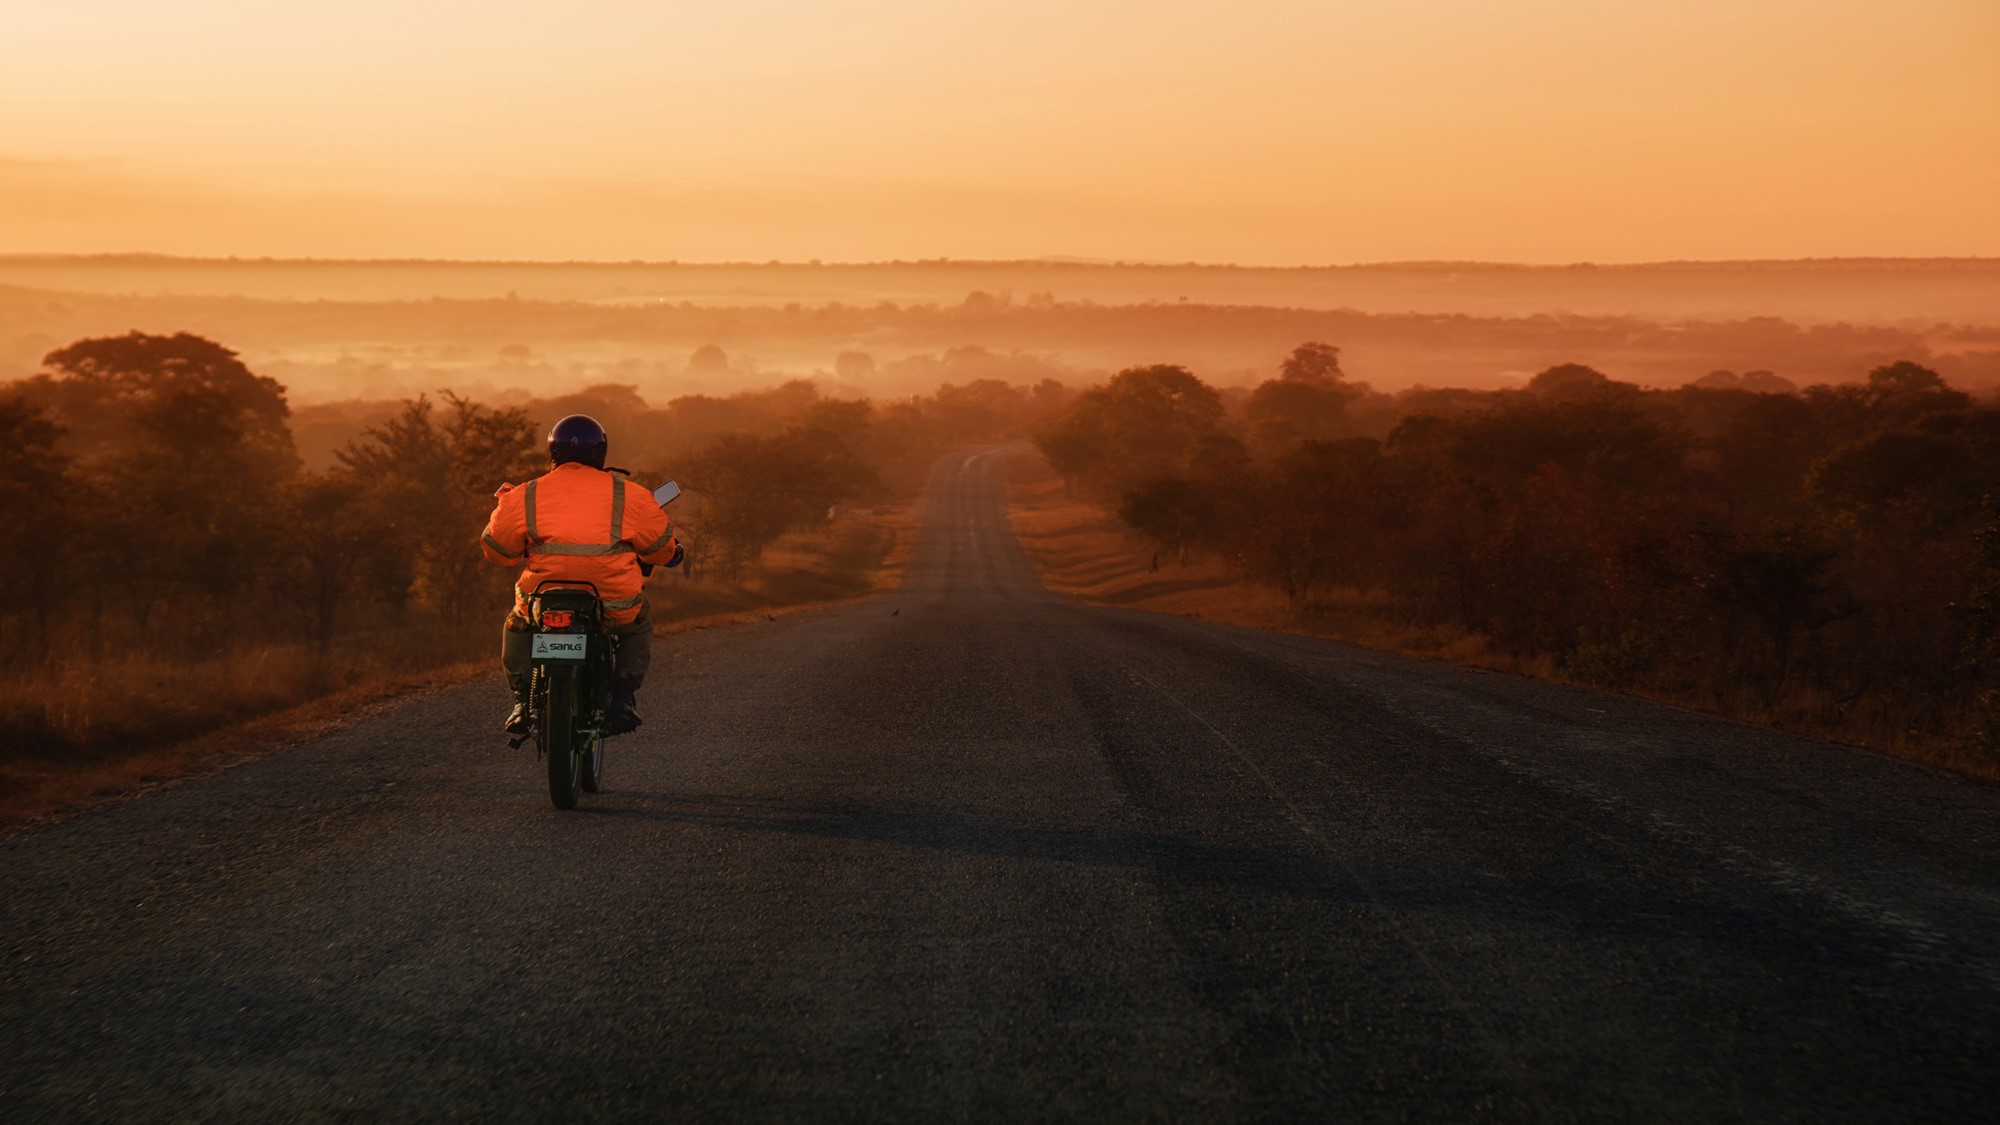 Mann på motorsykkel i åpent afrikansk landskap i solnedgang